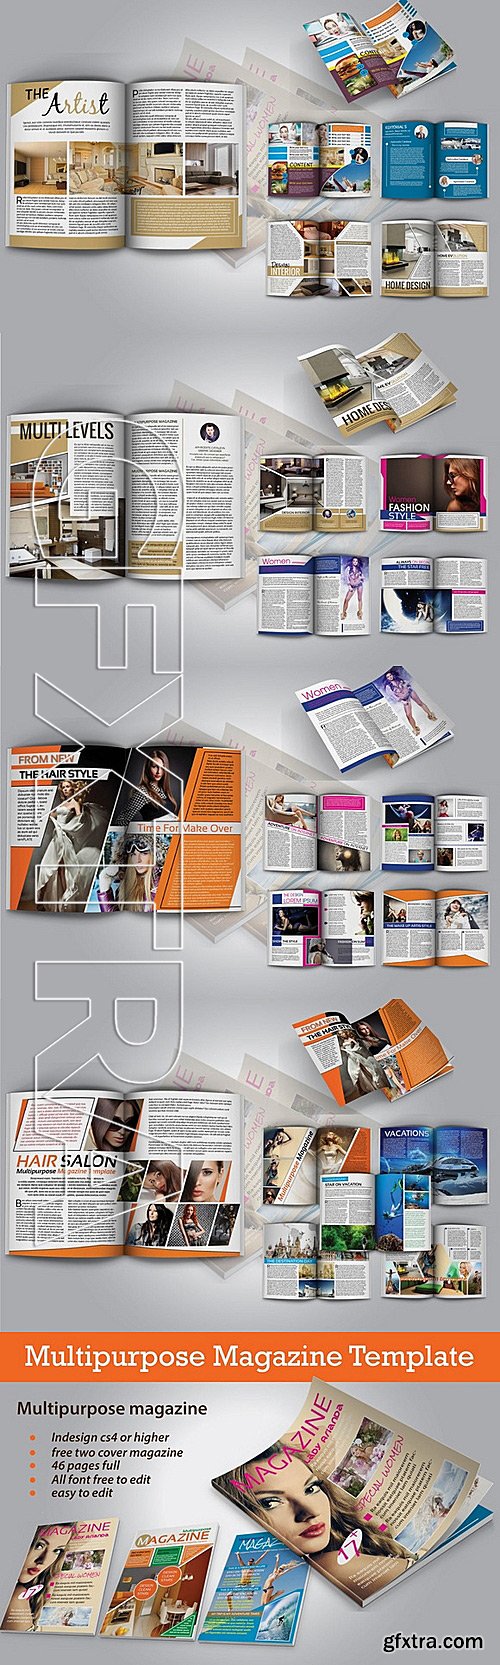 CM - Multipurpose Magazine Template New 297797